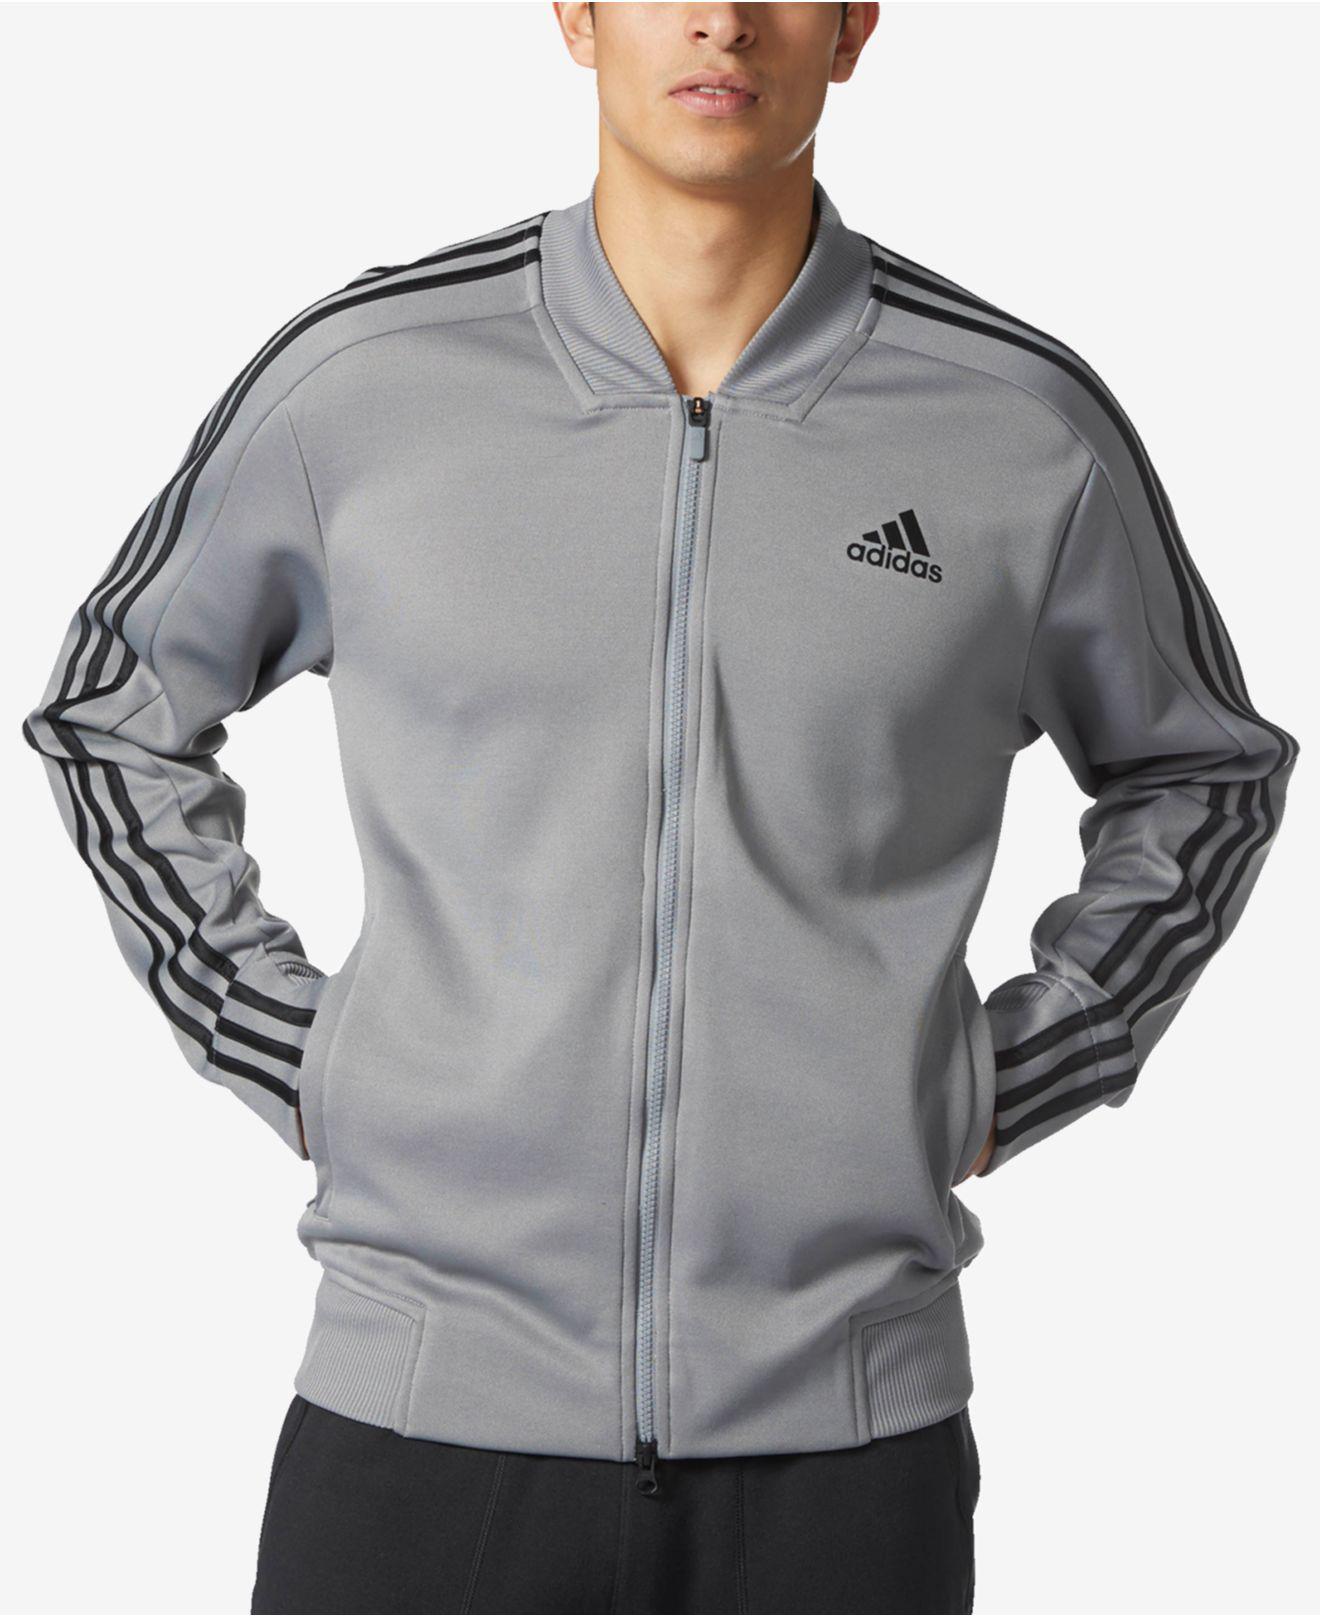 grey adidas jacket mens